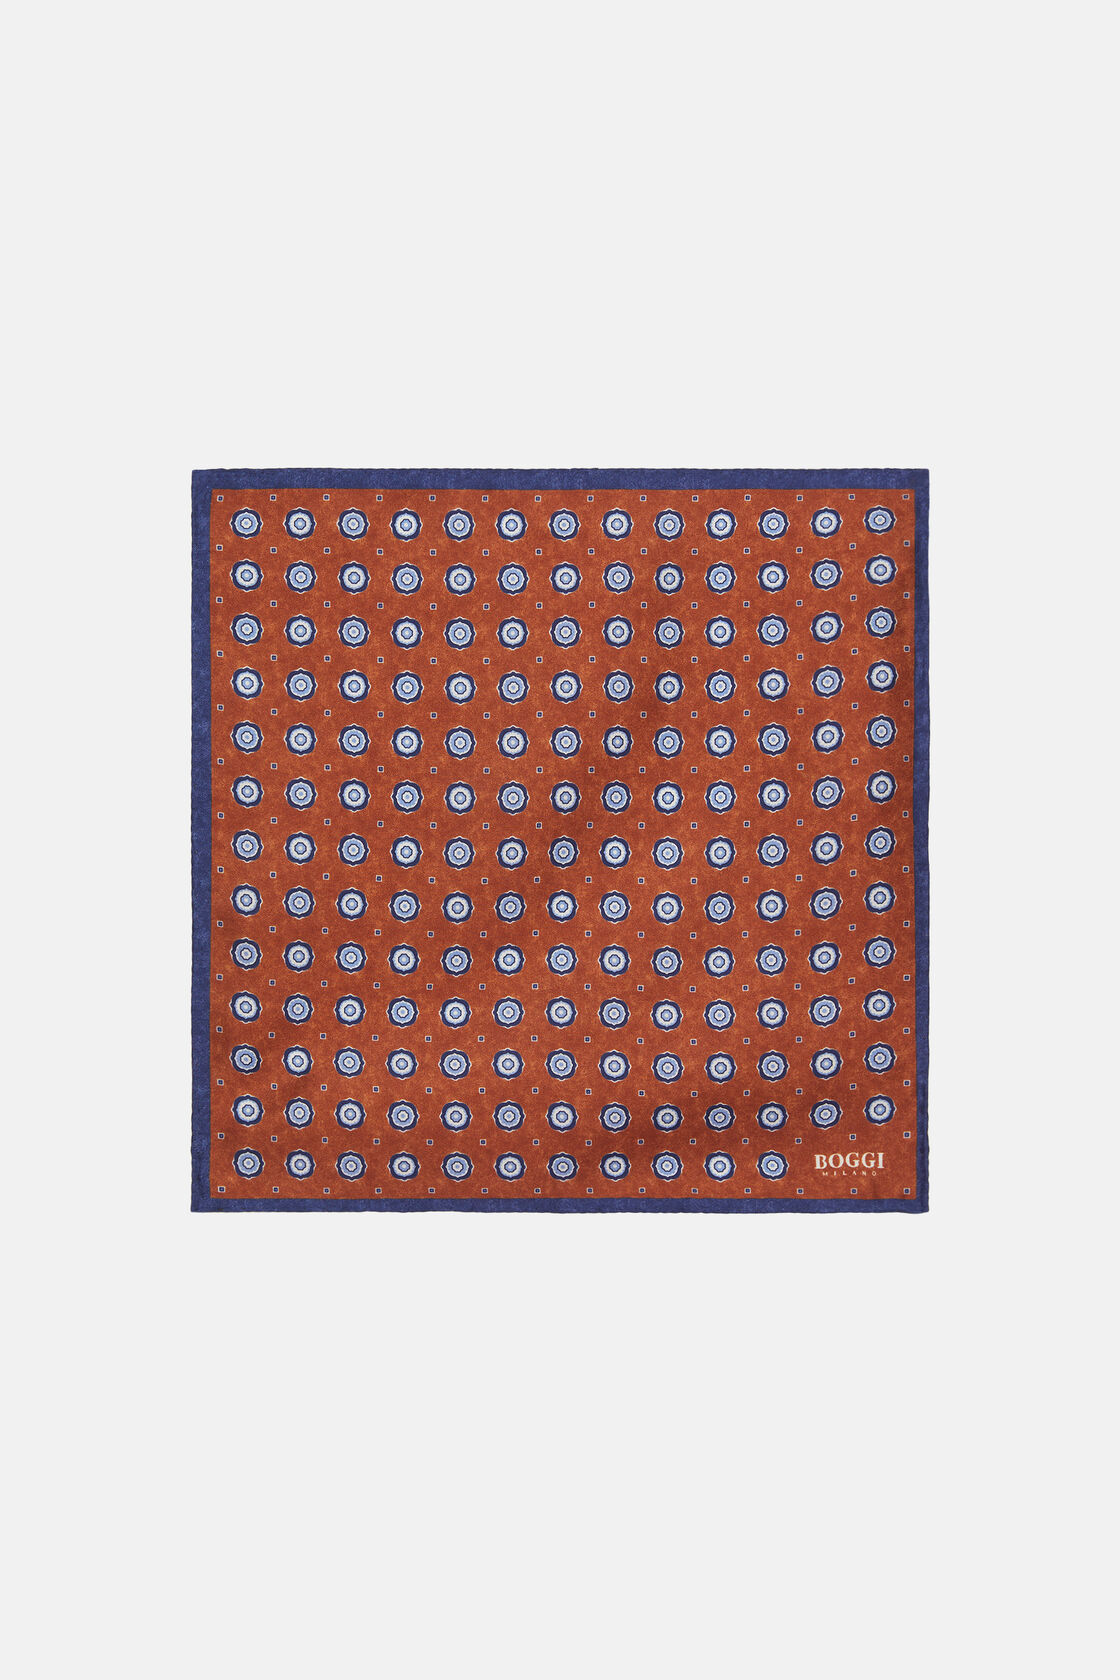 Μεταξωτό μαντηλάκι τσέπης με συμμετρικά σχέδια τύπου μενταγιόν, Orange, hi-res